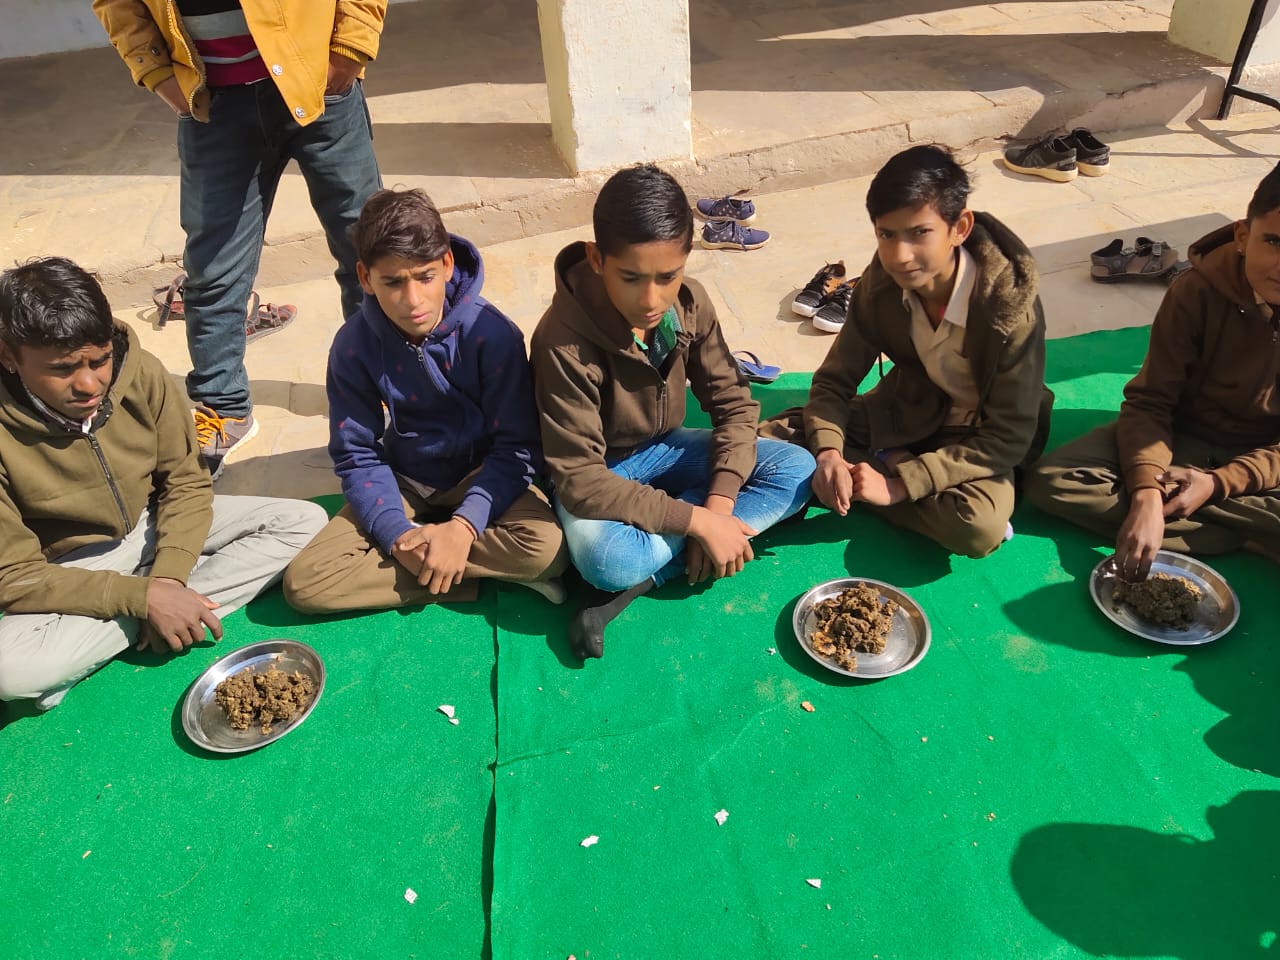 राजस्थान के स्कूलों में बच्चों को मिलेगा बाजरे की रोटी का चूरमा